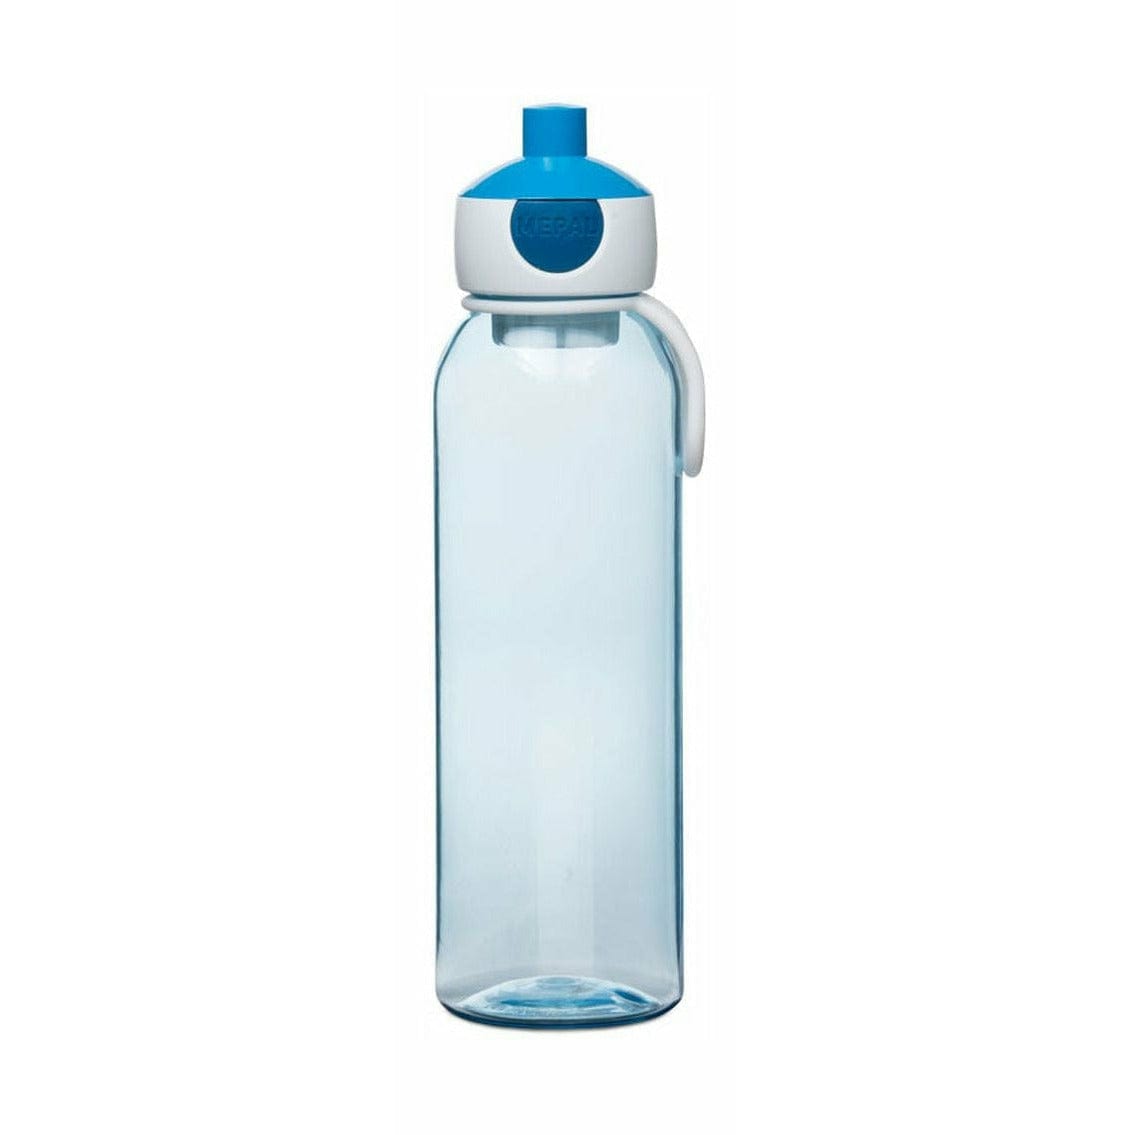 Mepal Pop -Up Water Bottle 0,5 L, niebieski